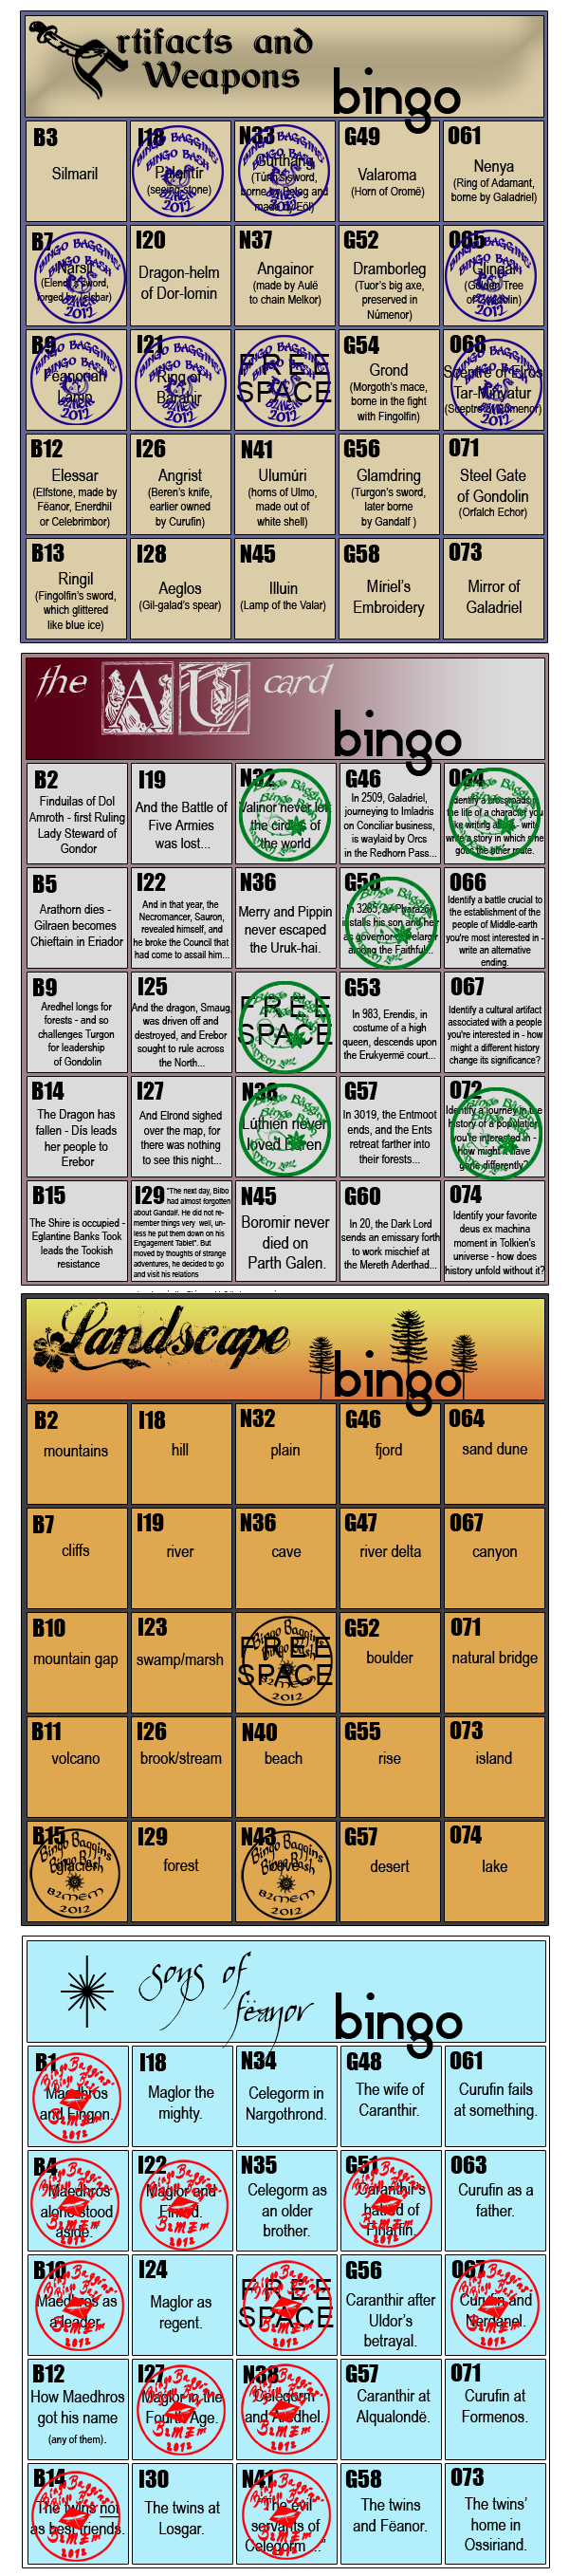 jennis_footie's Bingo Cards